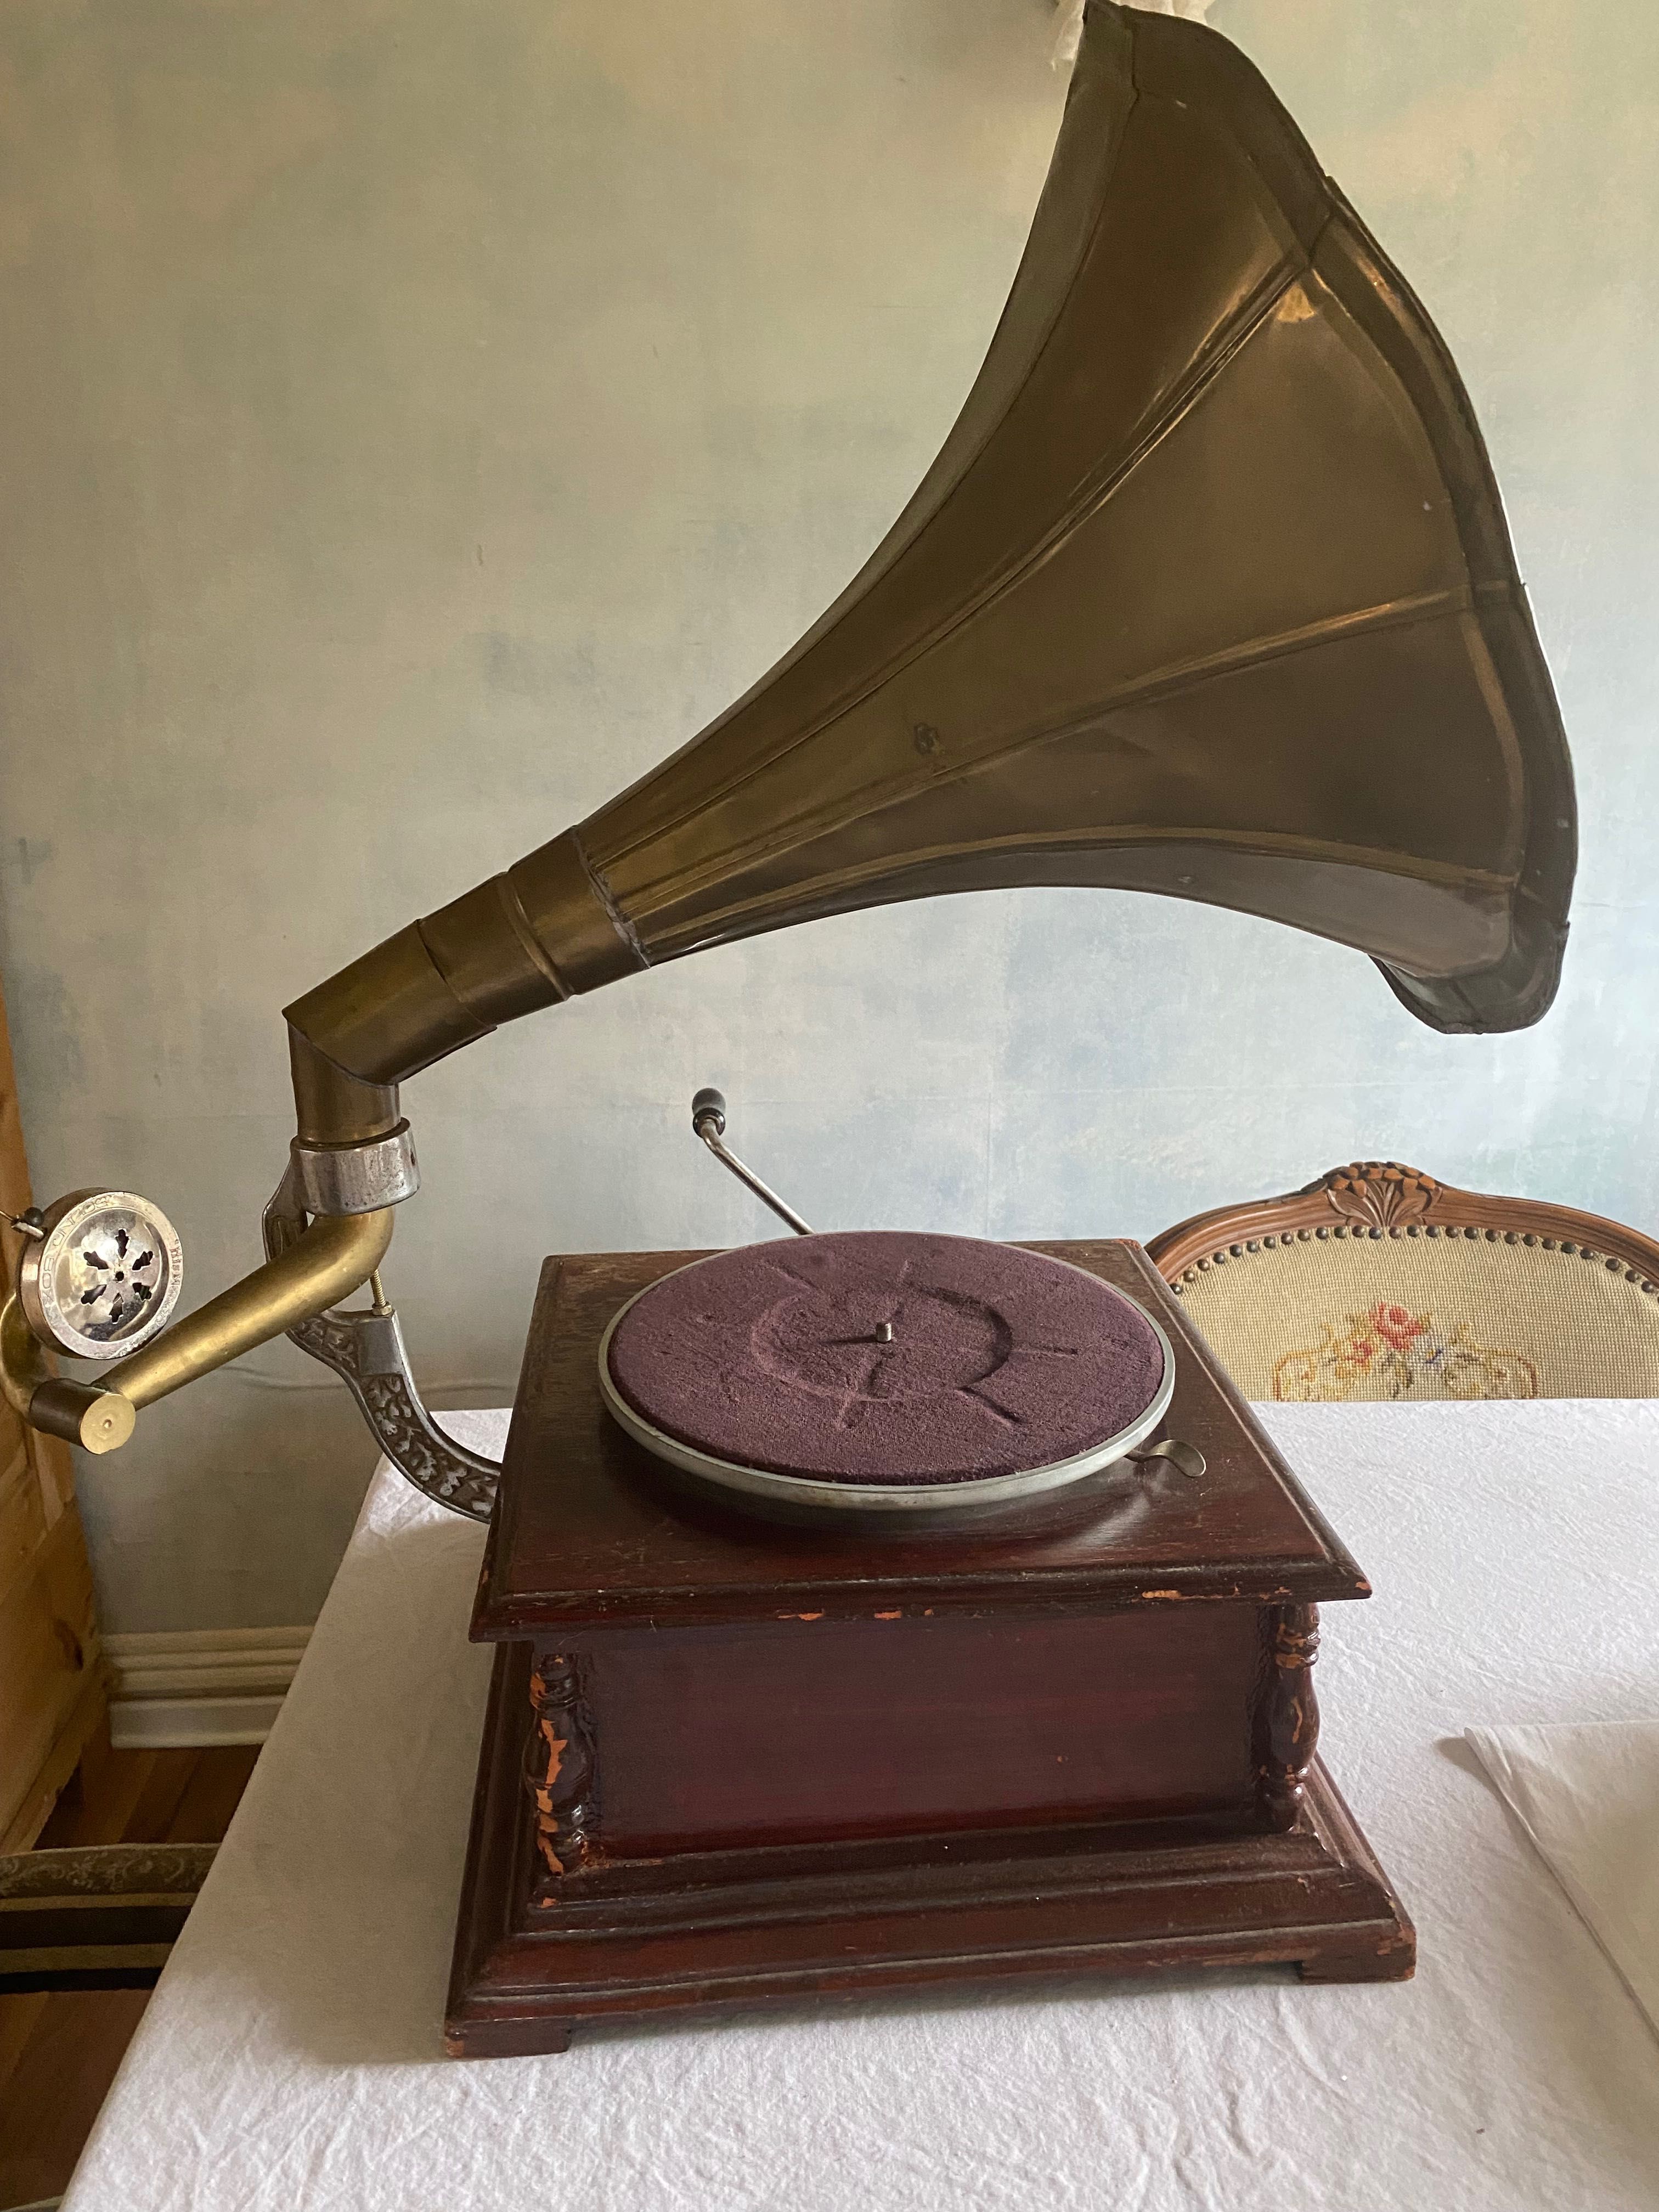 Zabytkowy gramofon/patefon, z ozdobną tubą